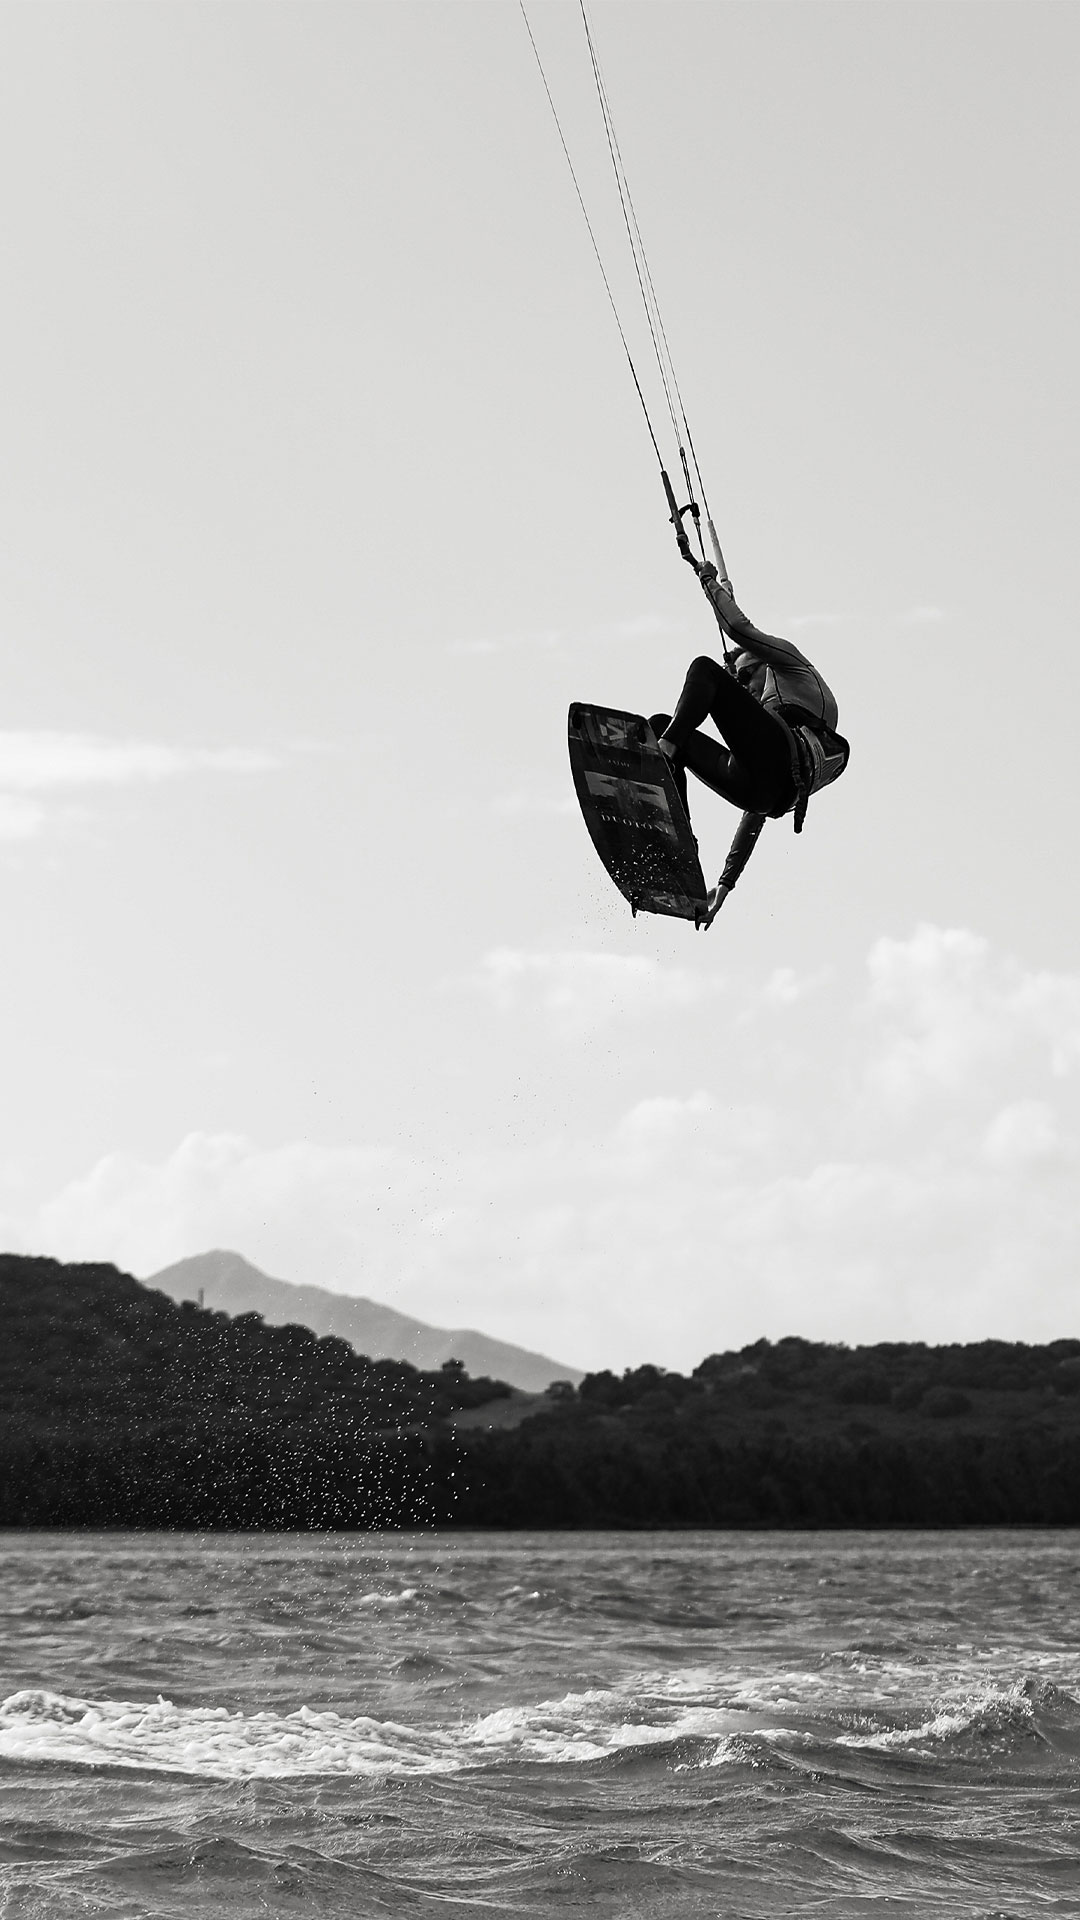 Kitesurfeur faisant un saut avec son matériel de kitesurf au spot du Morne, près du spot de vagues One Eye.